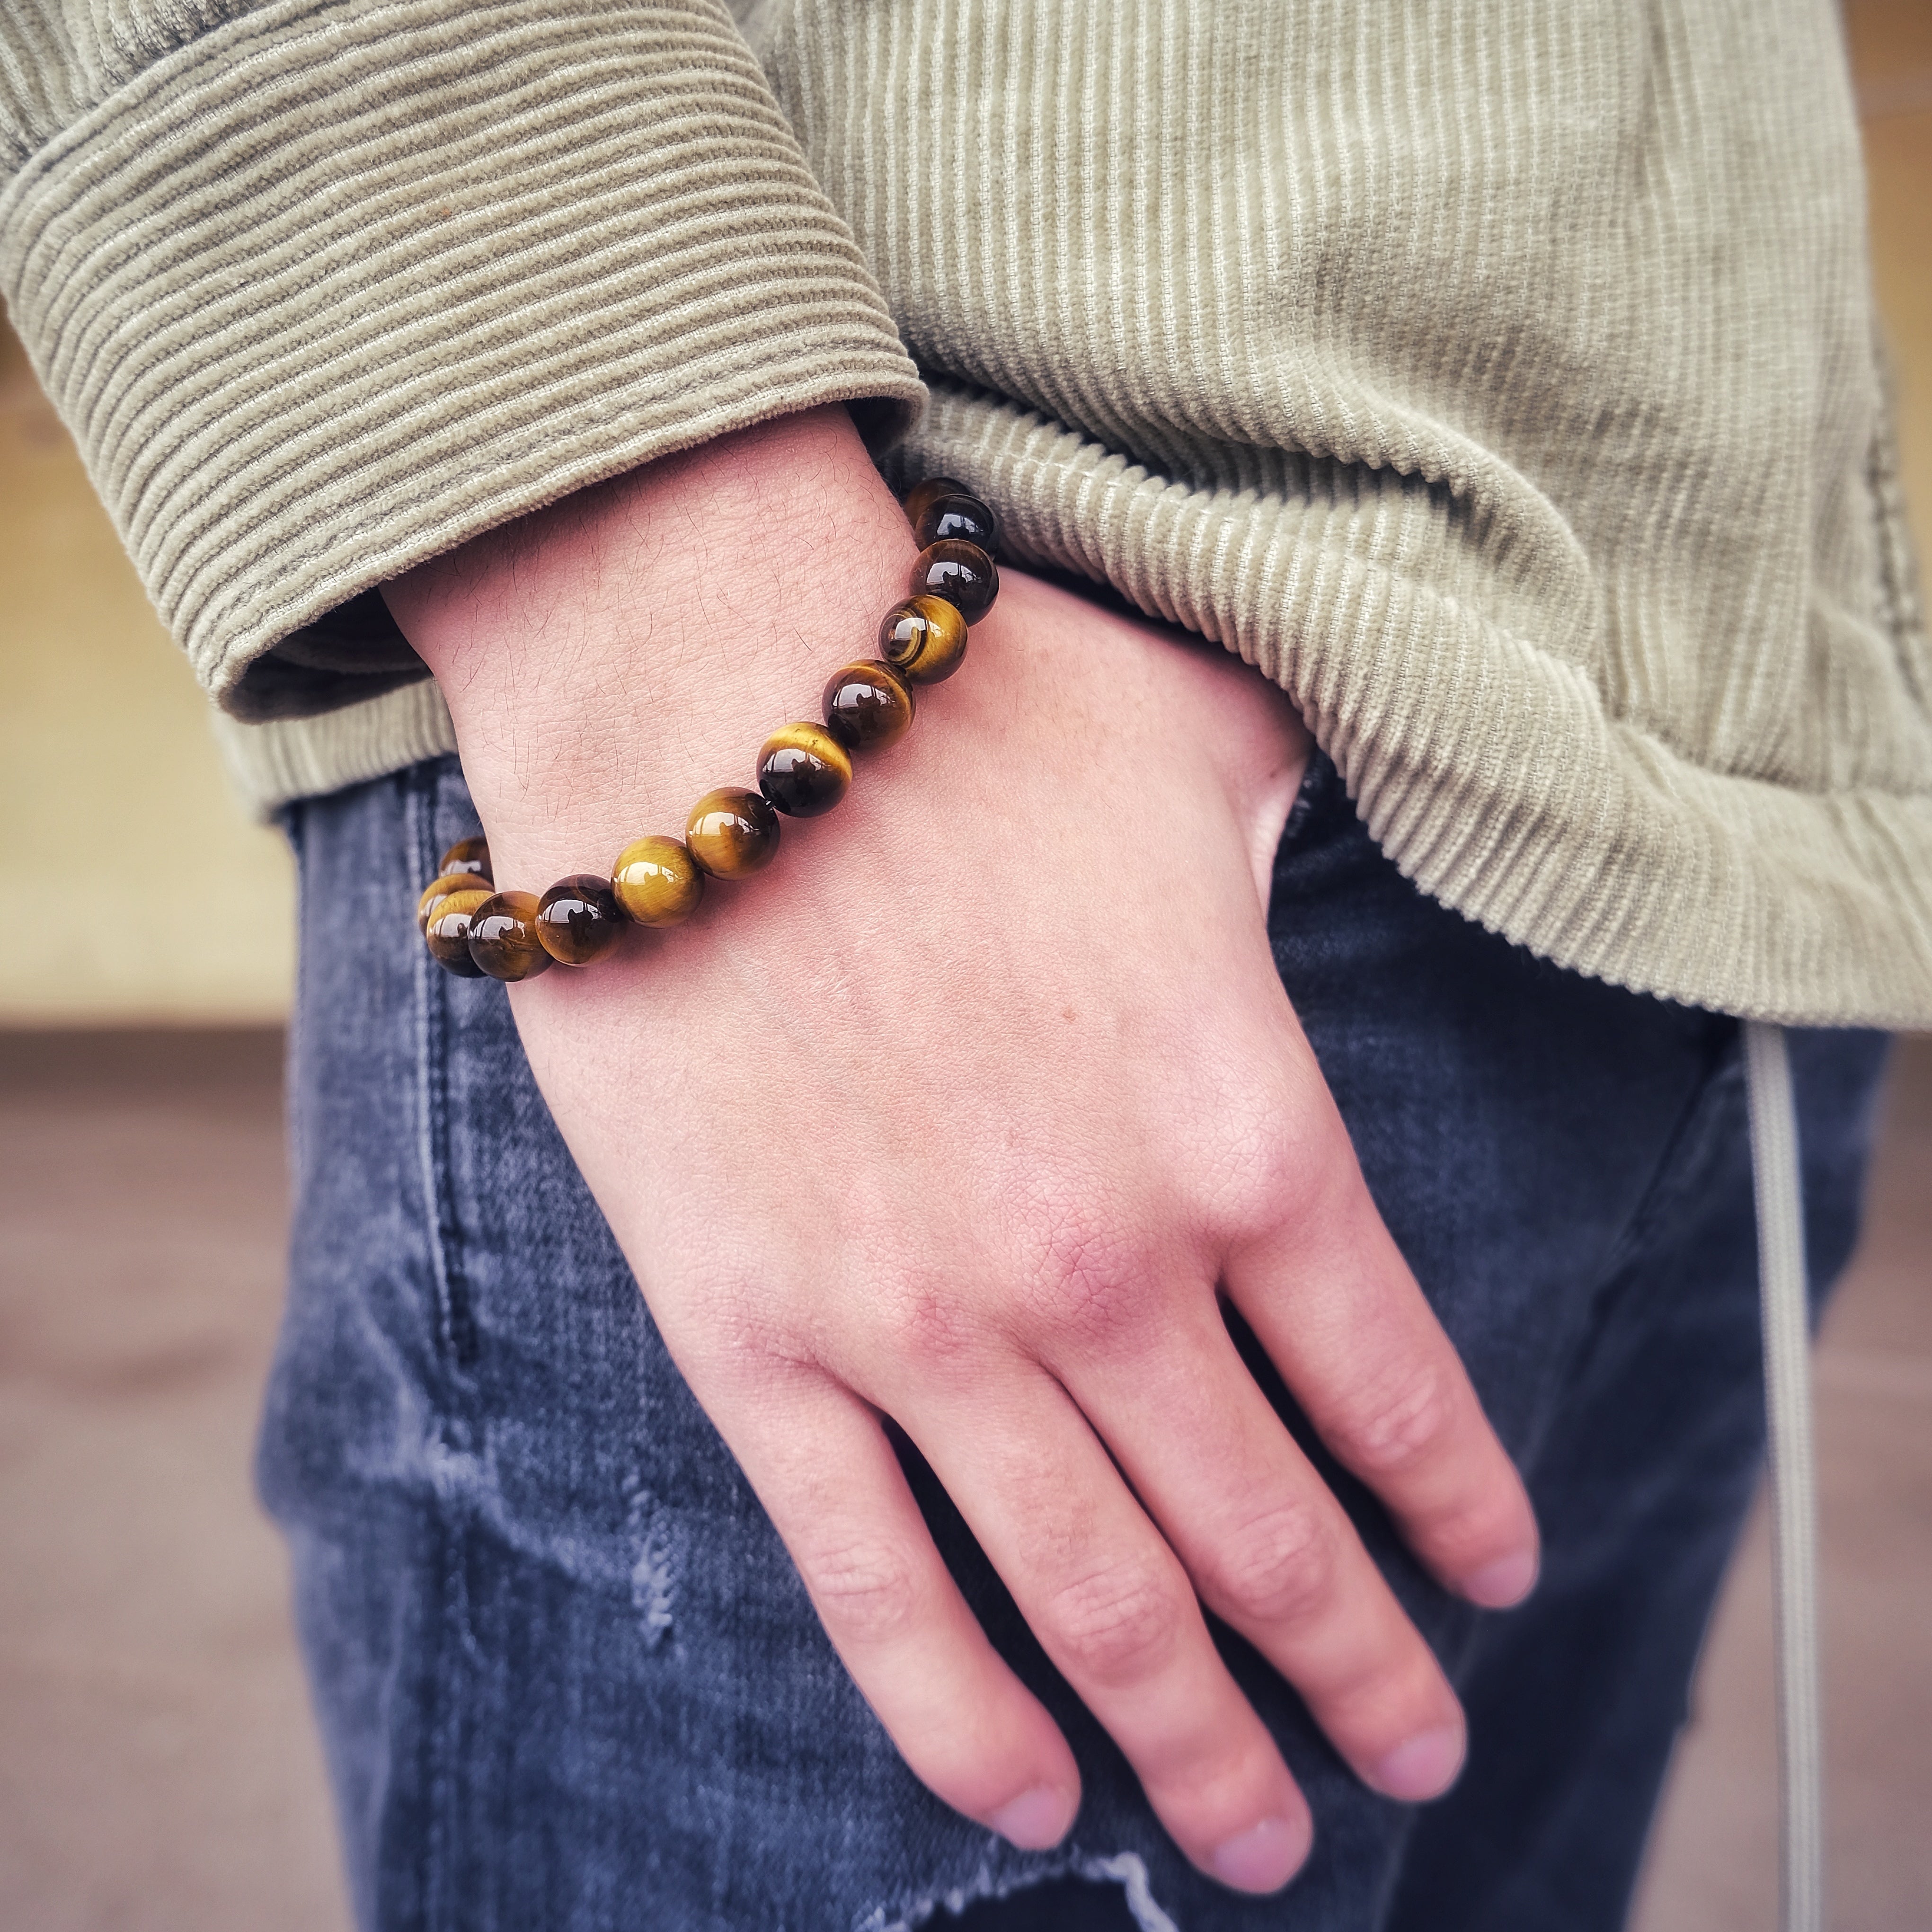 Tiger Eye gemstone bracelet  in 10mm beads worn on a model's wrist